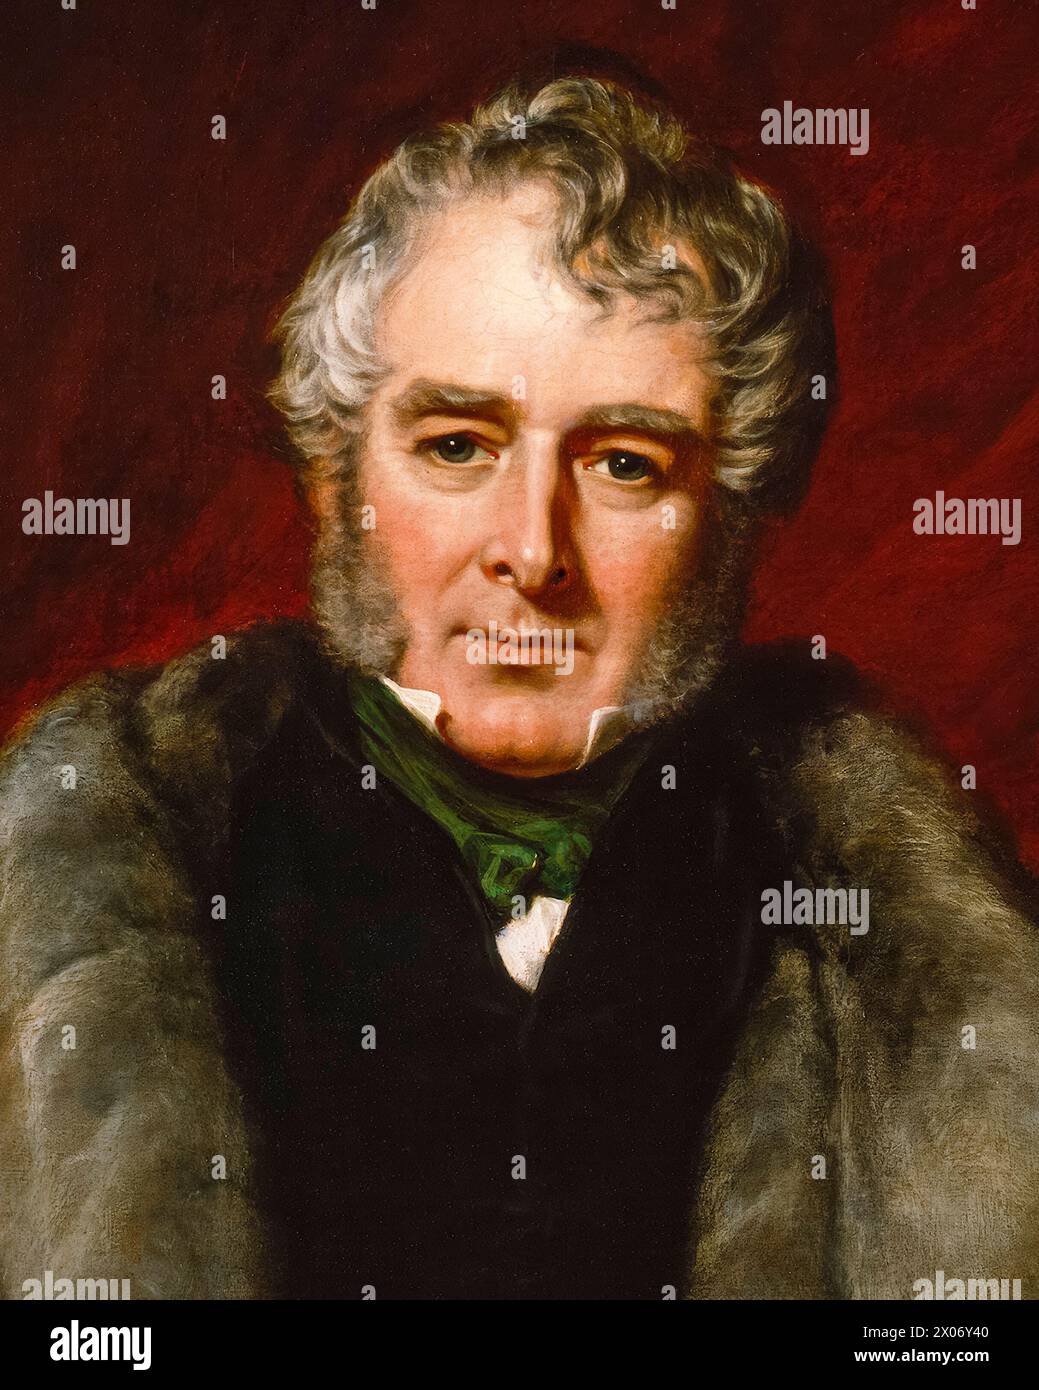 William Lamb, 2e vicomte Melbourne (1779-1848), connu sous le nom de « Lord Melbourne », premier ministre du Royaume-Uni juillet-novembre 1834 et 1835-1841, portrait peint à l'huile sur toile par John Partridge, 1844 Banque D'Images